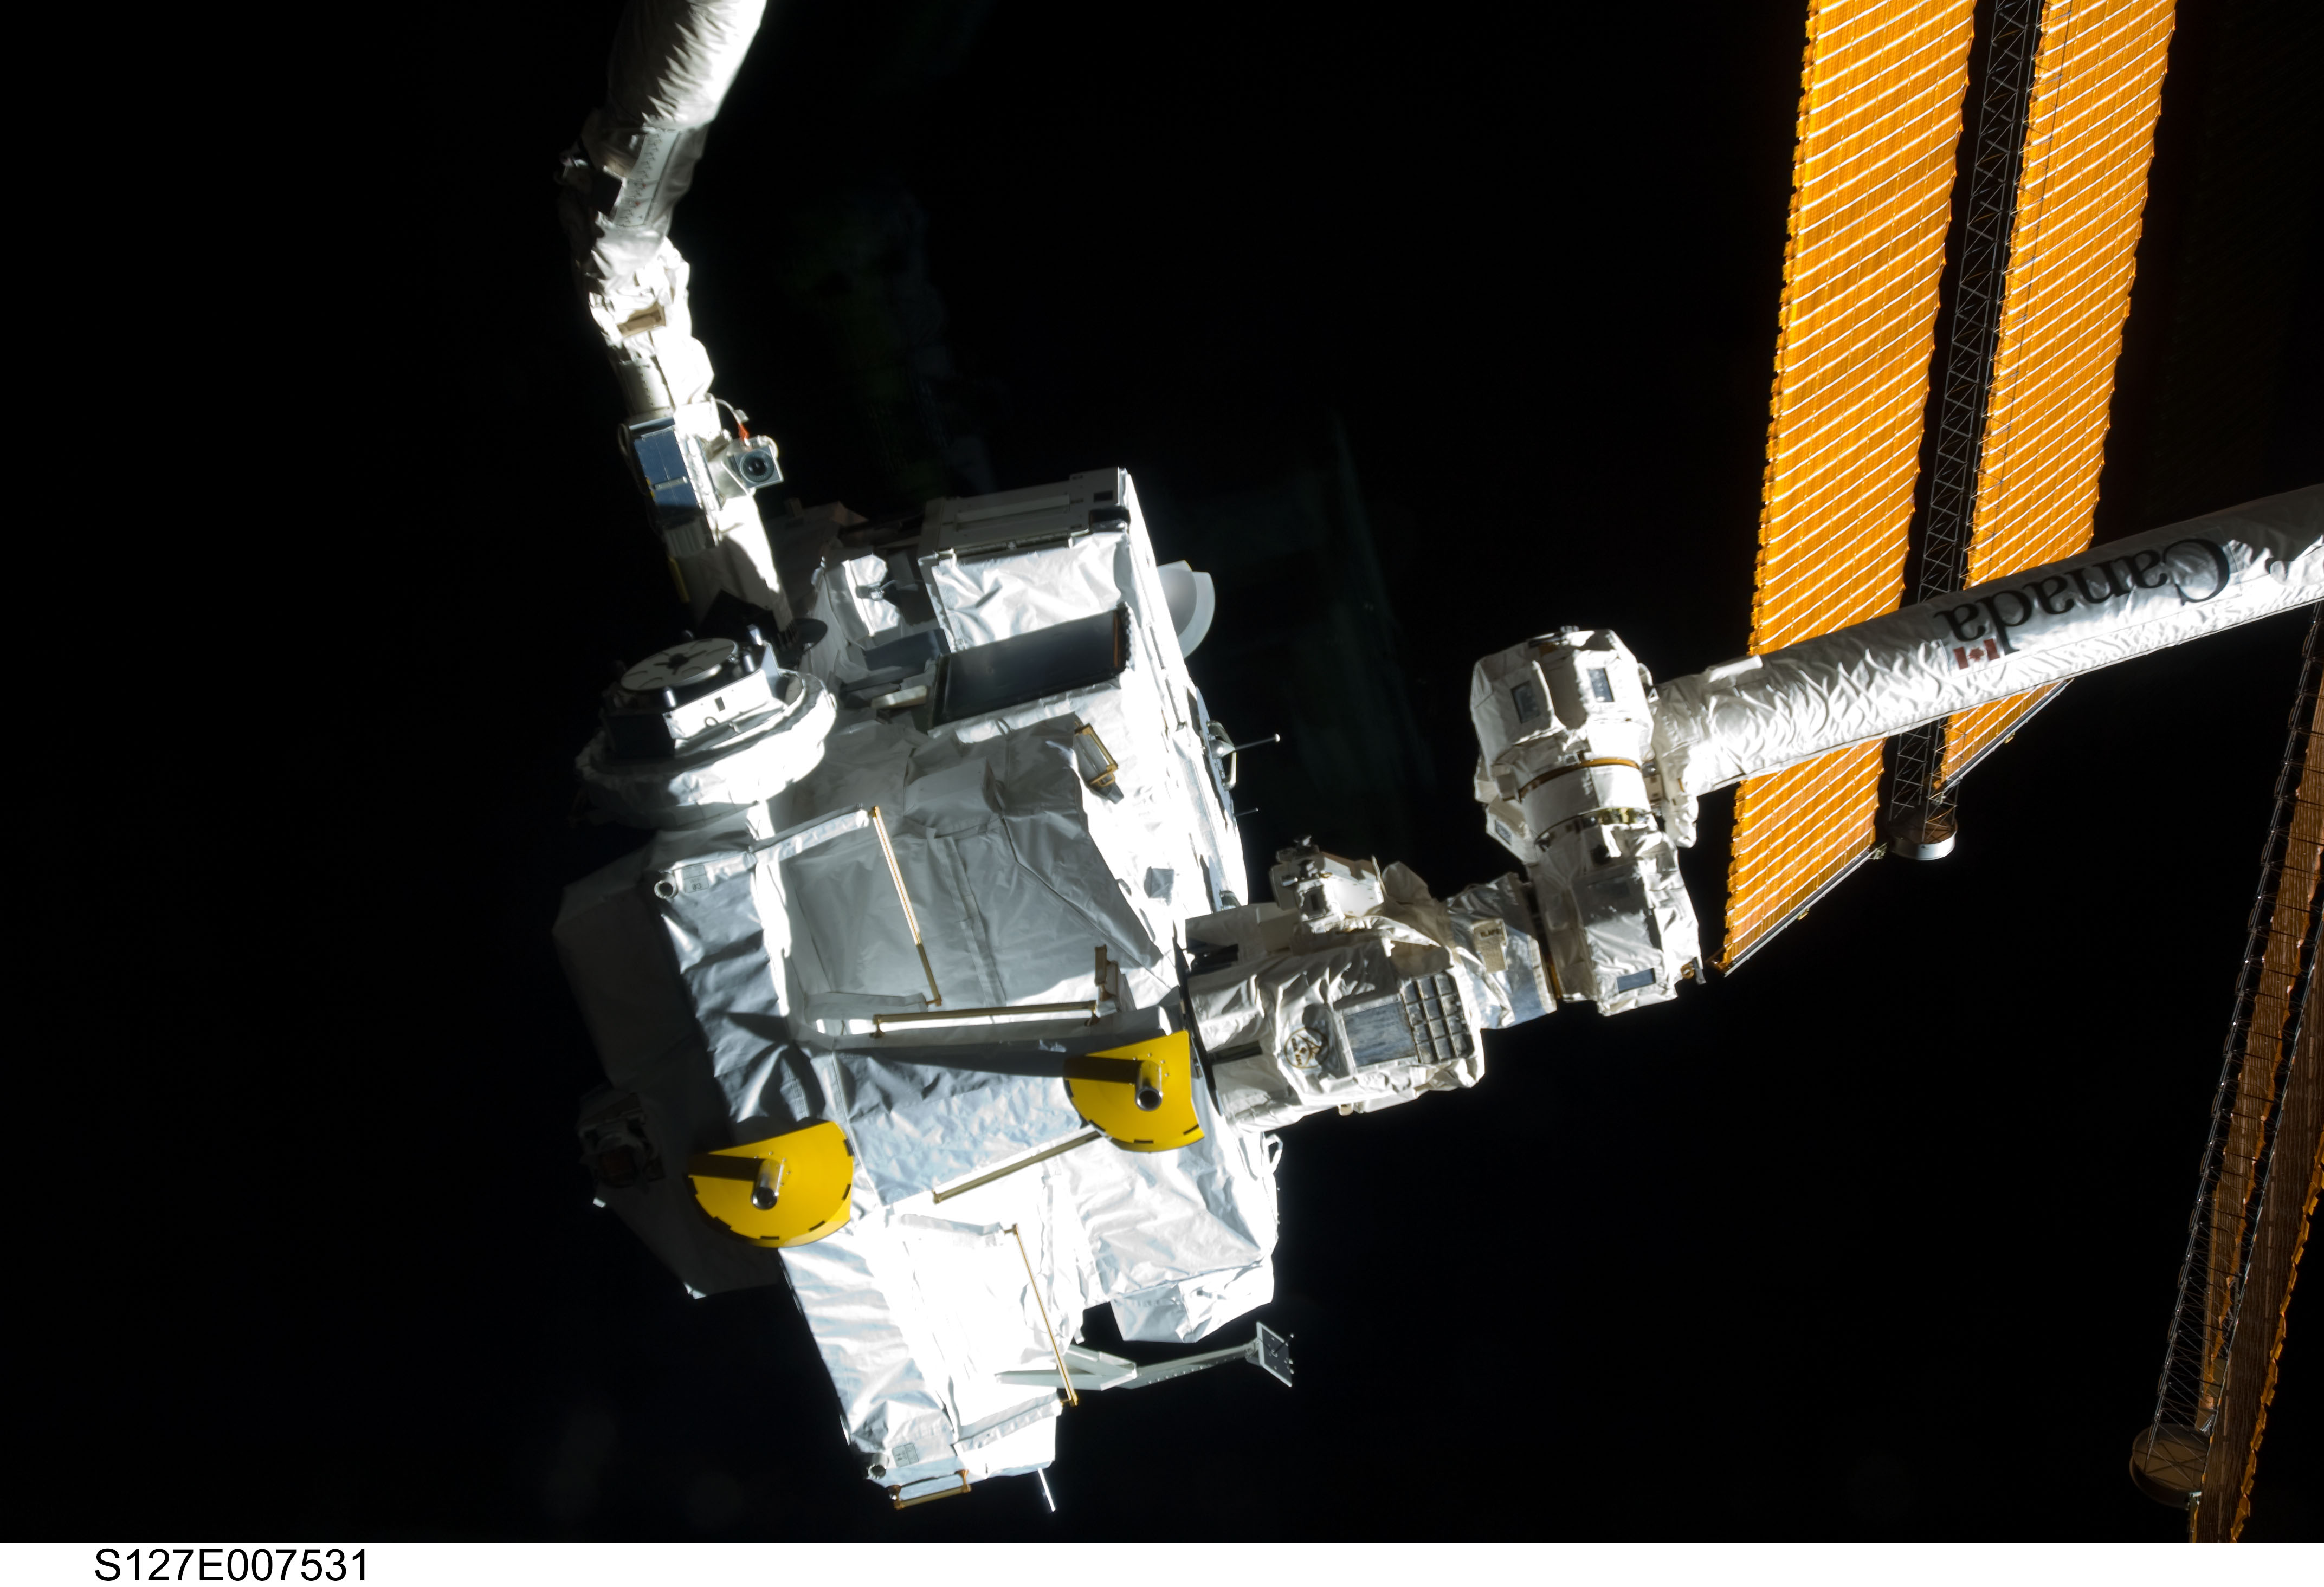 Le module JLE (Japanese Logistics Module Exposed Section) extrait de la soute de la navette Endeavour par Canadarm2, le bras de l'ISS. © Nasa